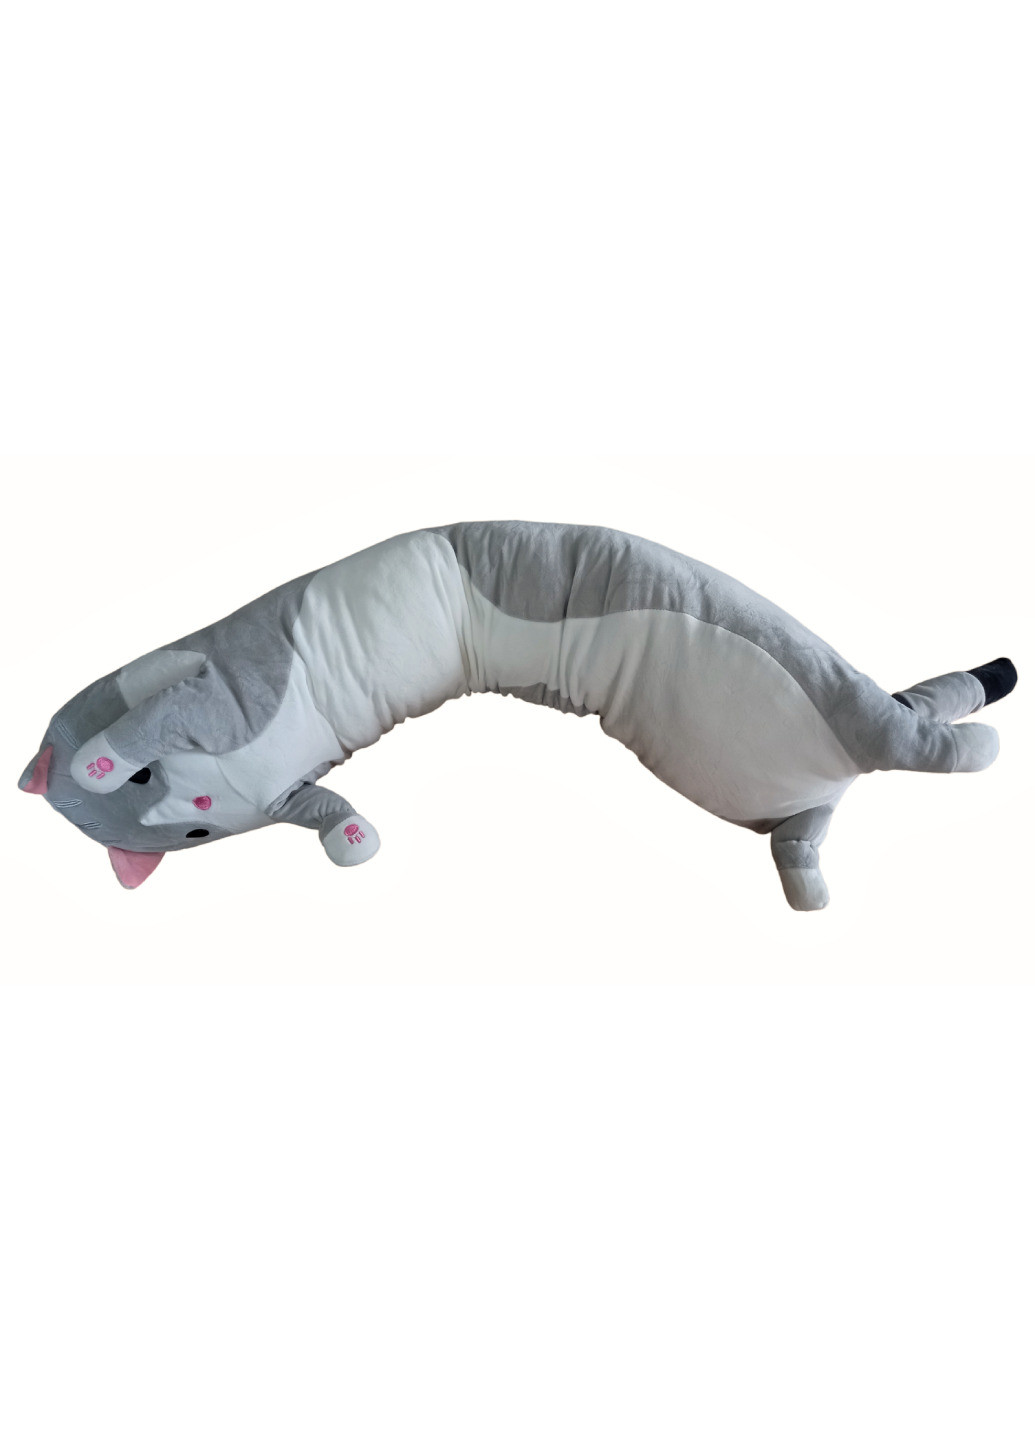 Кот батон мягкая игрушка антистресс подушка плюшевый котик обнимашка 70 см серый No Brand (259809890)